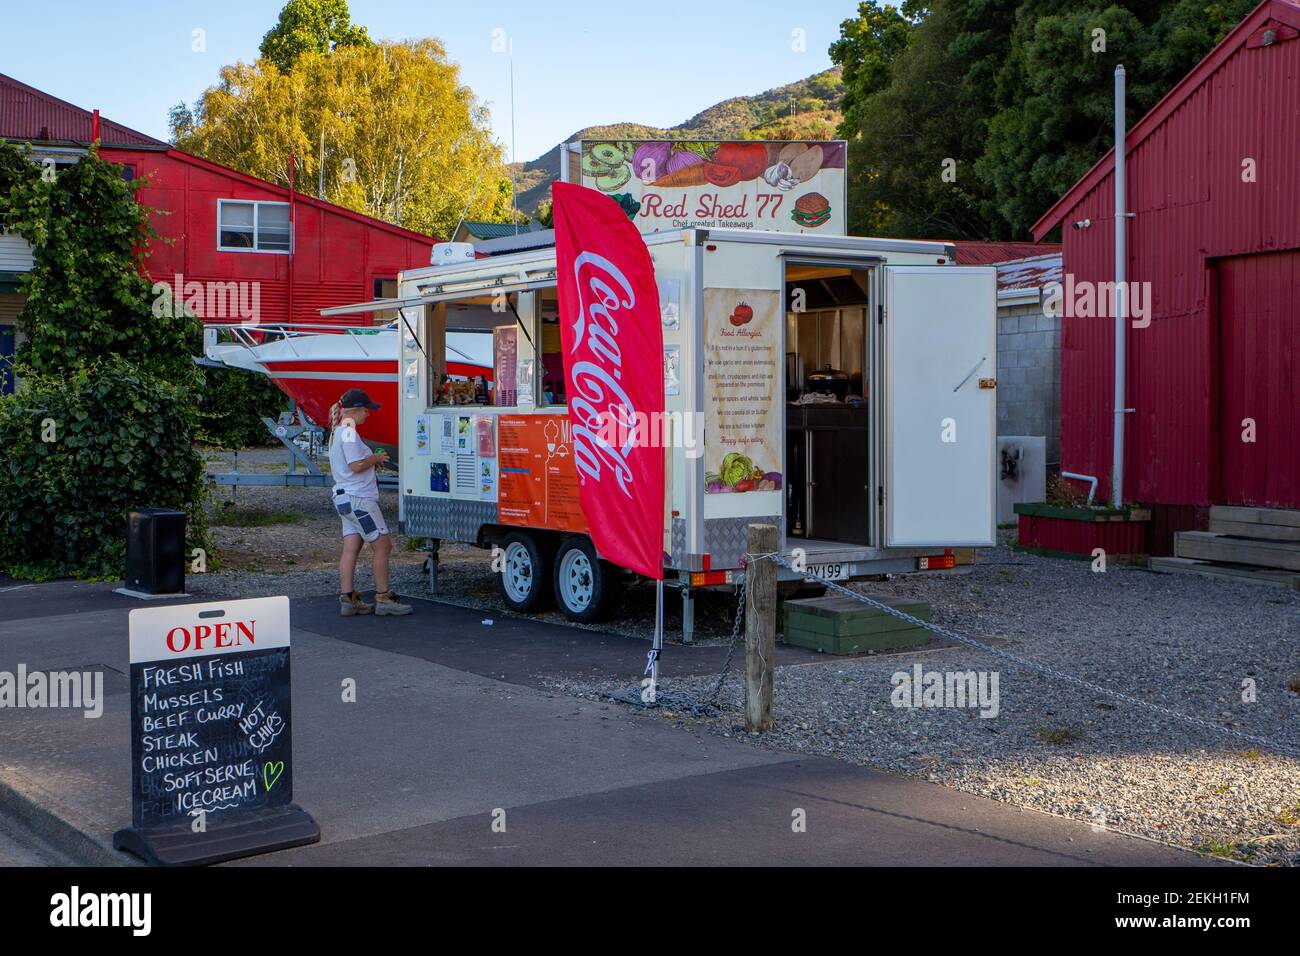 Havelock, Marlborough, Nuova Zelanda, Febbraio 19 2021: Red Shed 77 - un furgone alimentare che vende pesce fresco, cozze curry, bevande, gelato sulla strada principale Foto Stock